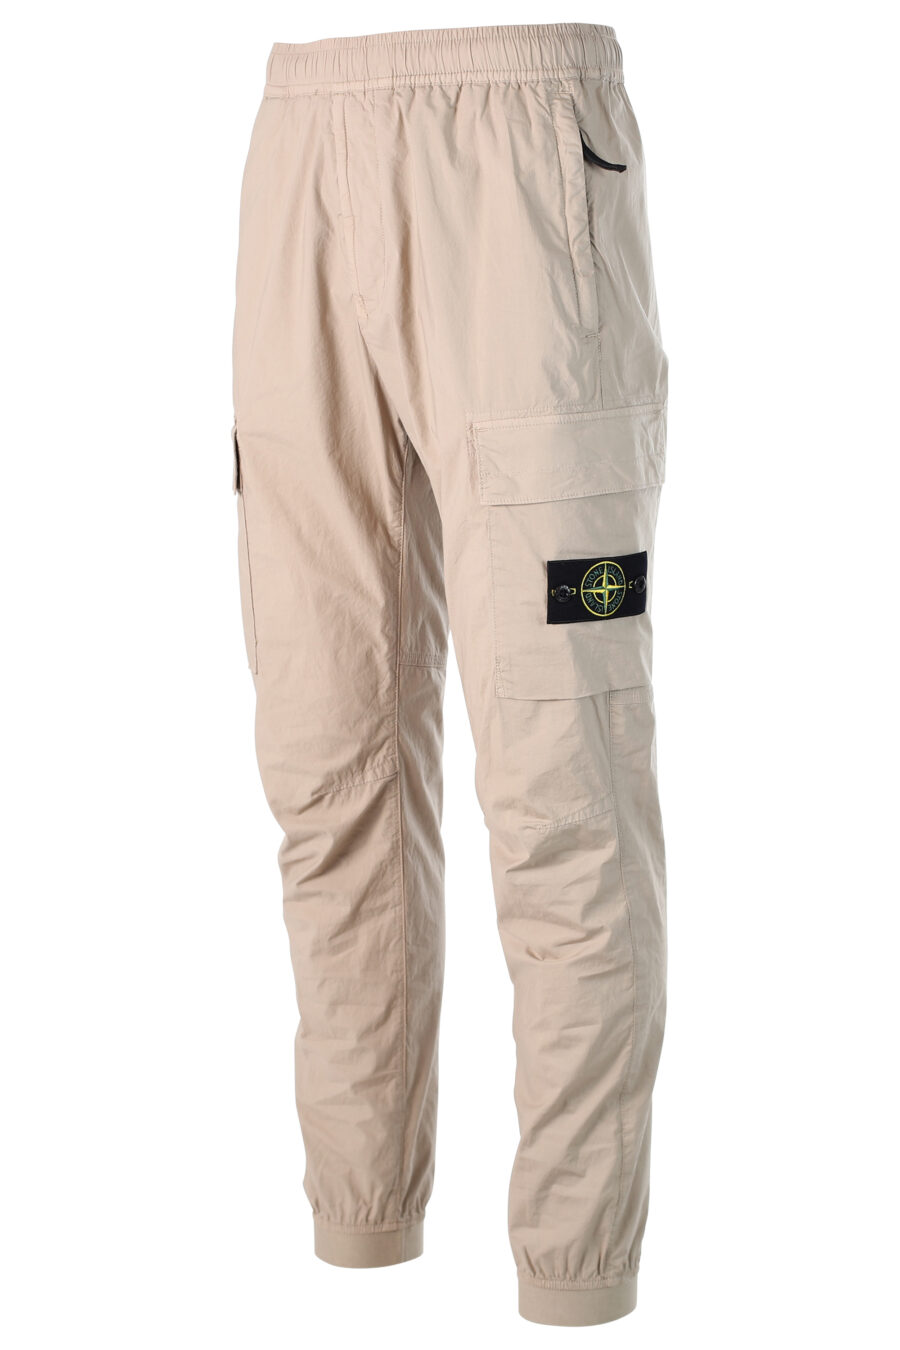 Pantalon cargo beige avec patch - 8052572528552 2